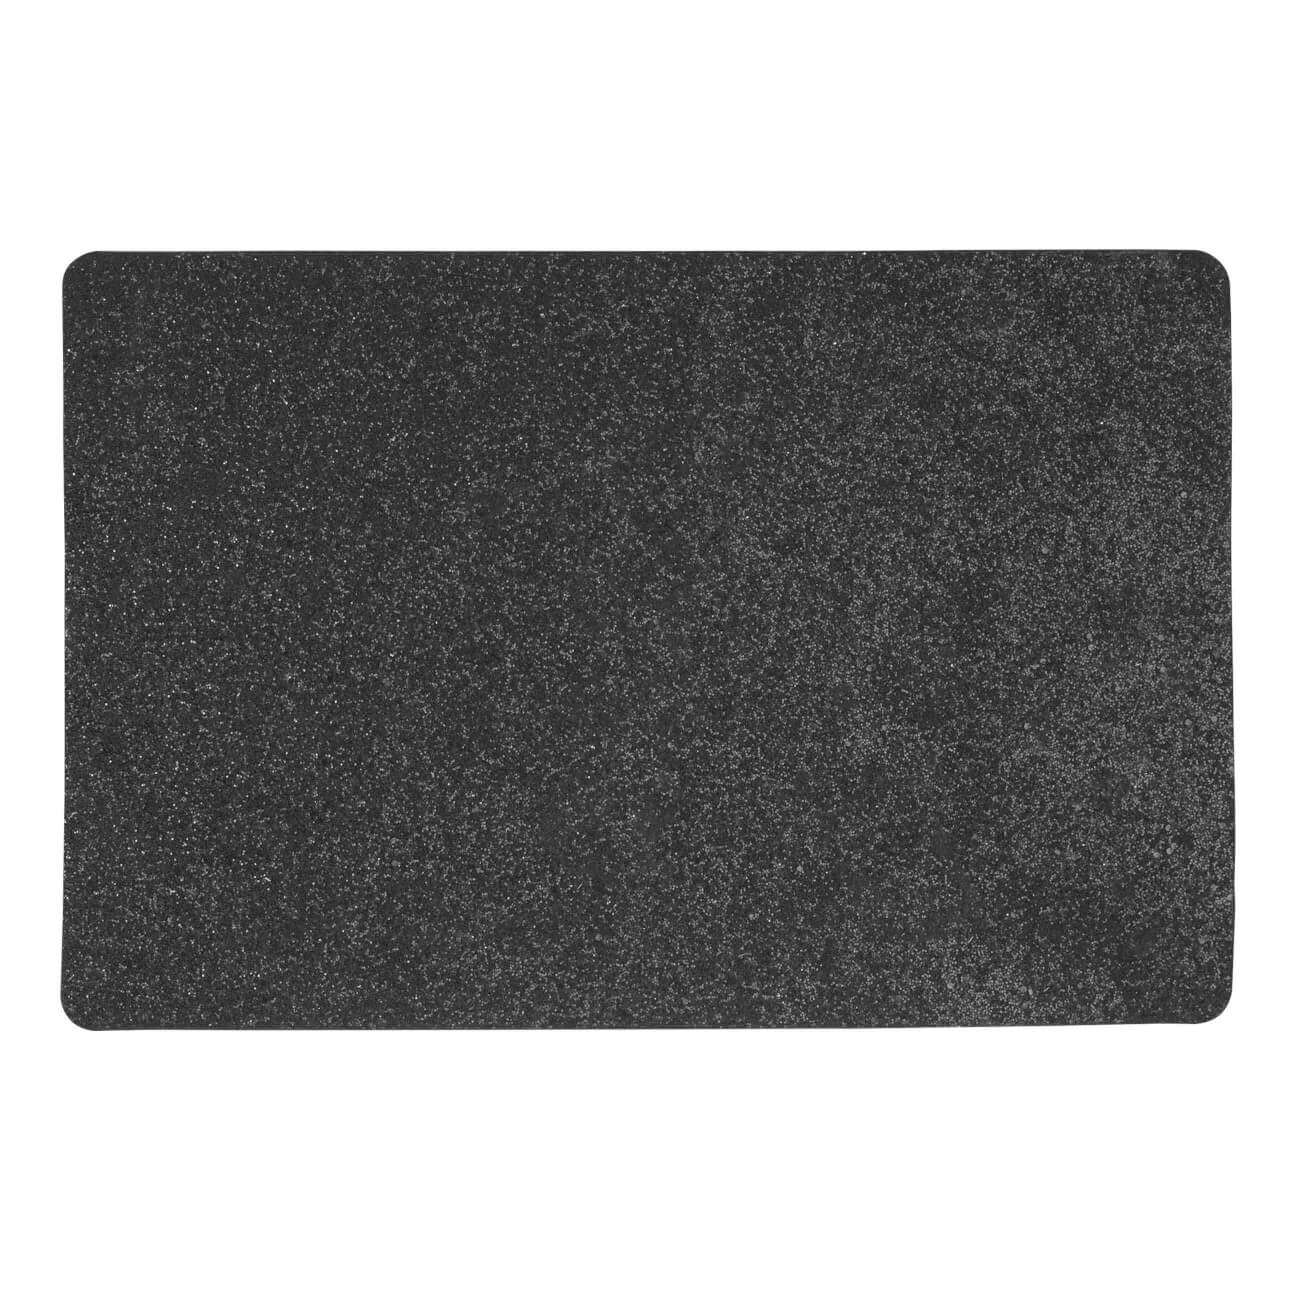 Салфетка под приборы, 30х45 см, ПВХ, прямоугольная, черная, Rock салфетка под приборы 30х45 см пвх полиэстер прямоугольная песочная solid